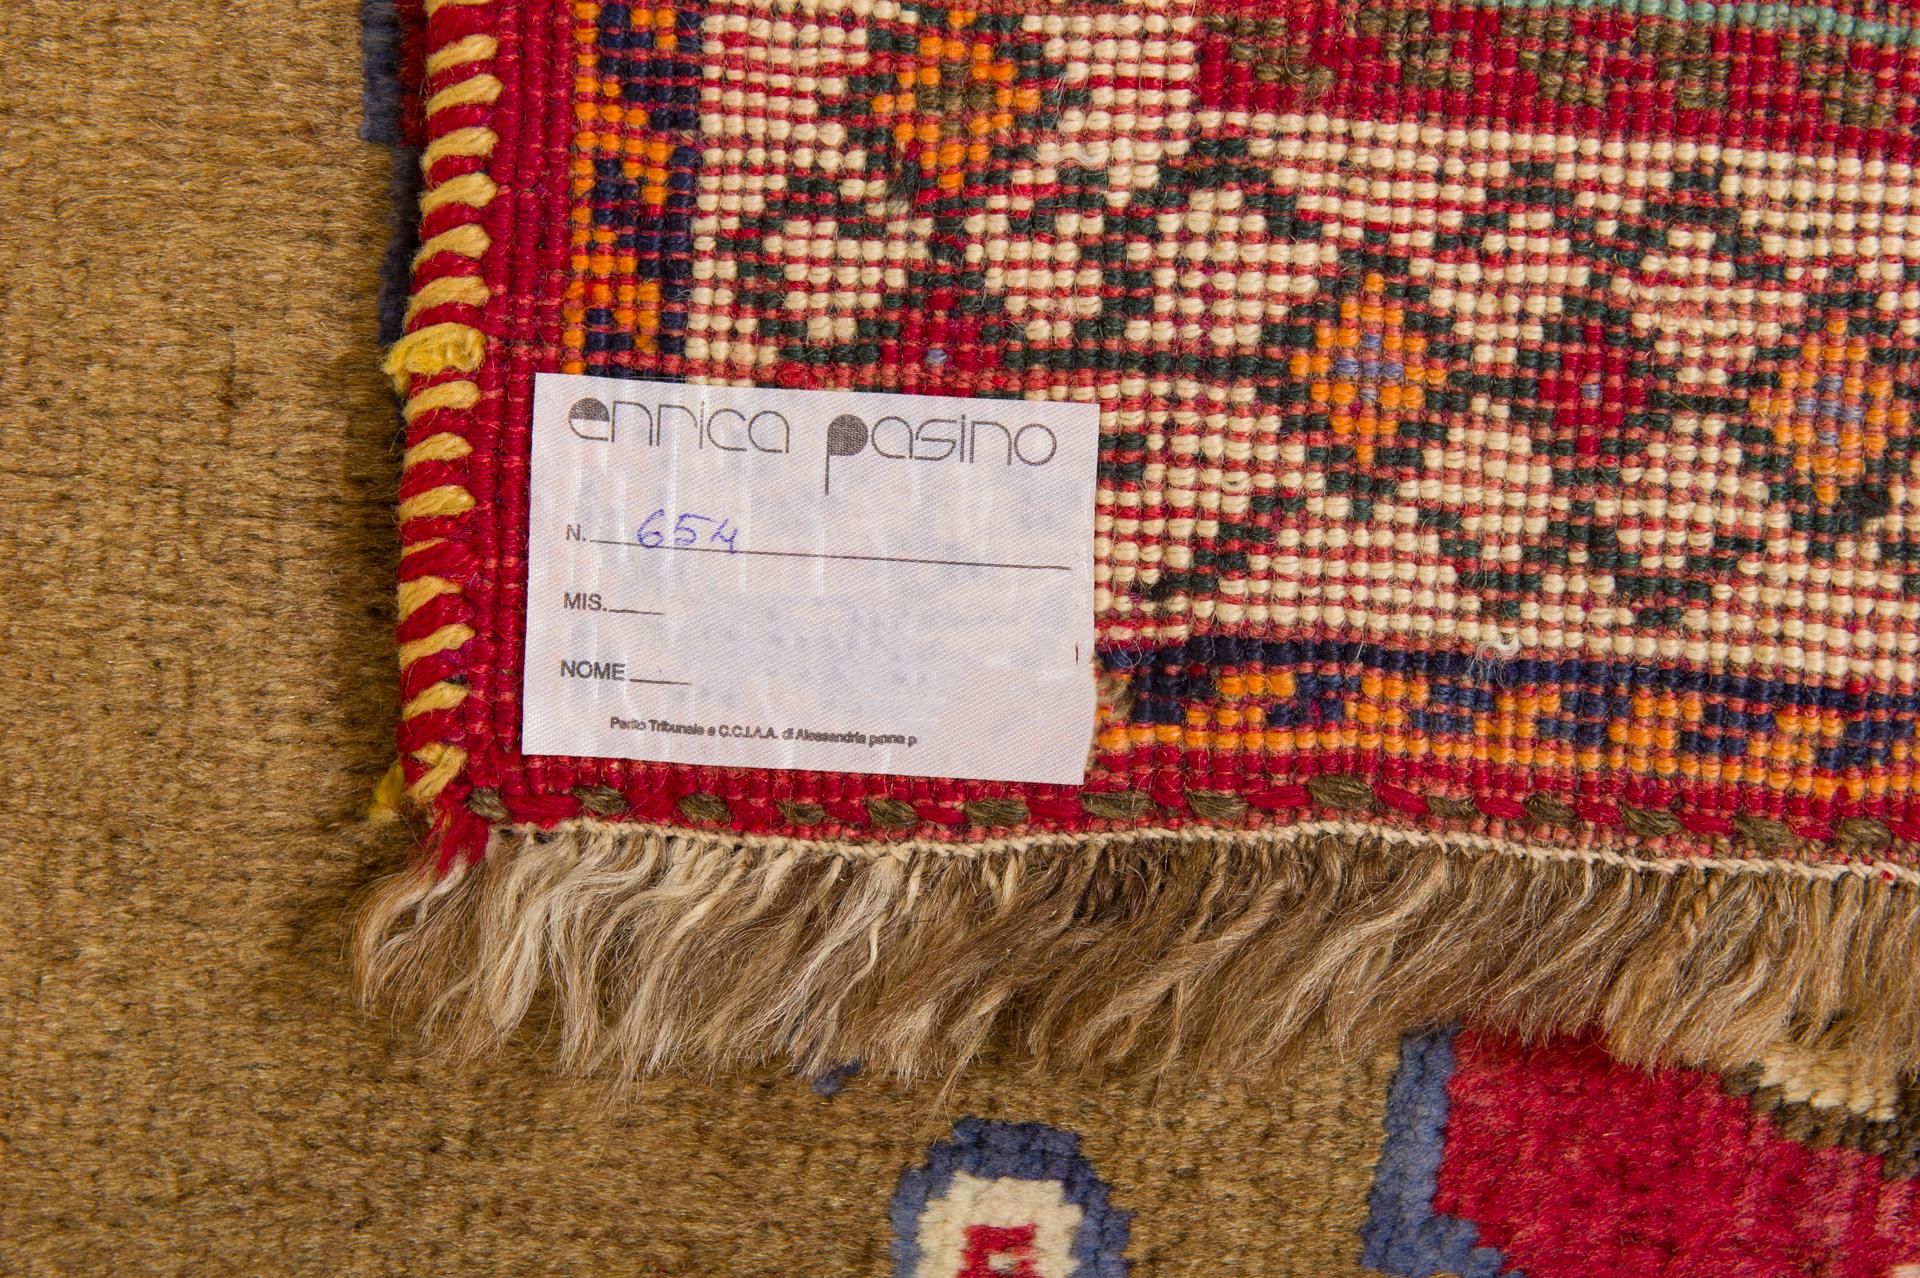 Orientteppich mit Tiermotiven, inspiriert von antiken persischen Gabbeh-Teppichen aus dem Zentralasien  des zwanzigsten Jahrhunderts.
Sehr interessant für die Schrift der Weber (keine Analphabeten!), die ihre Arbeit signieren wollten:
